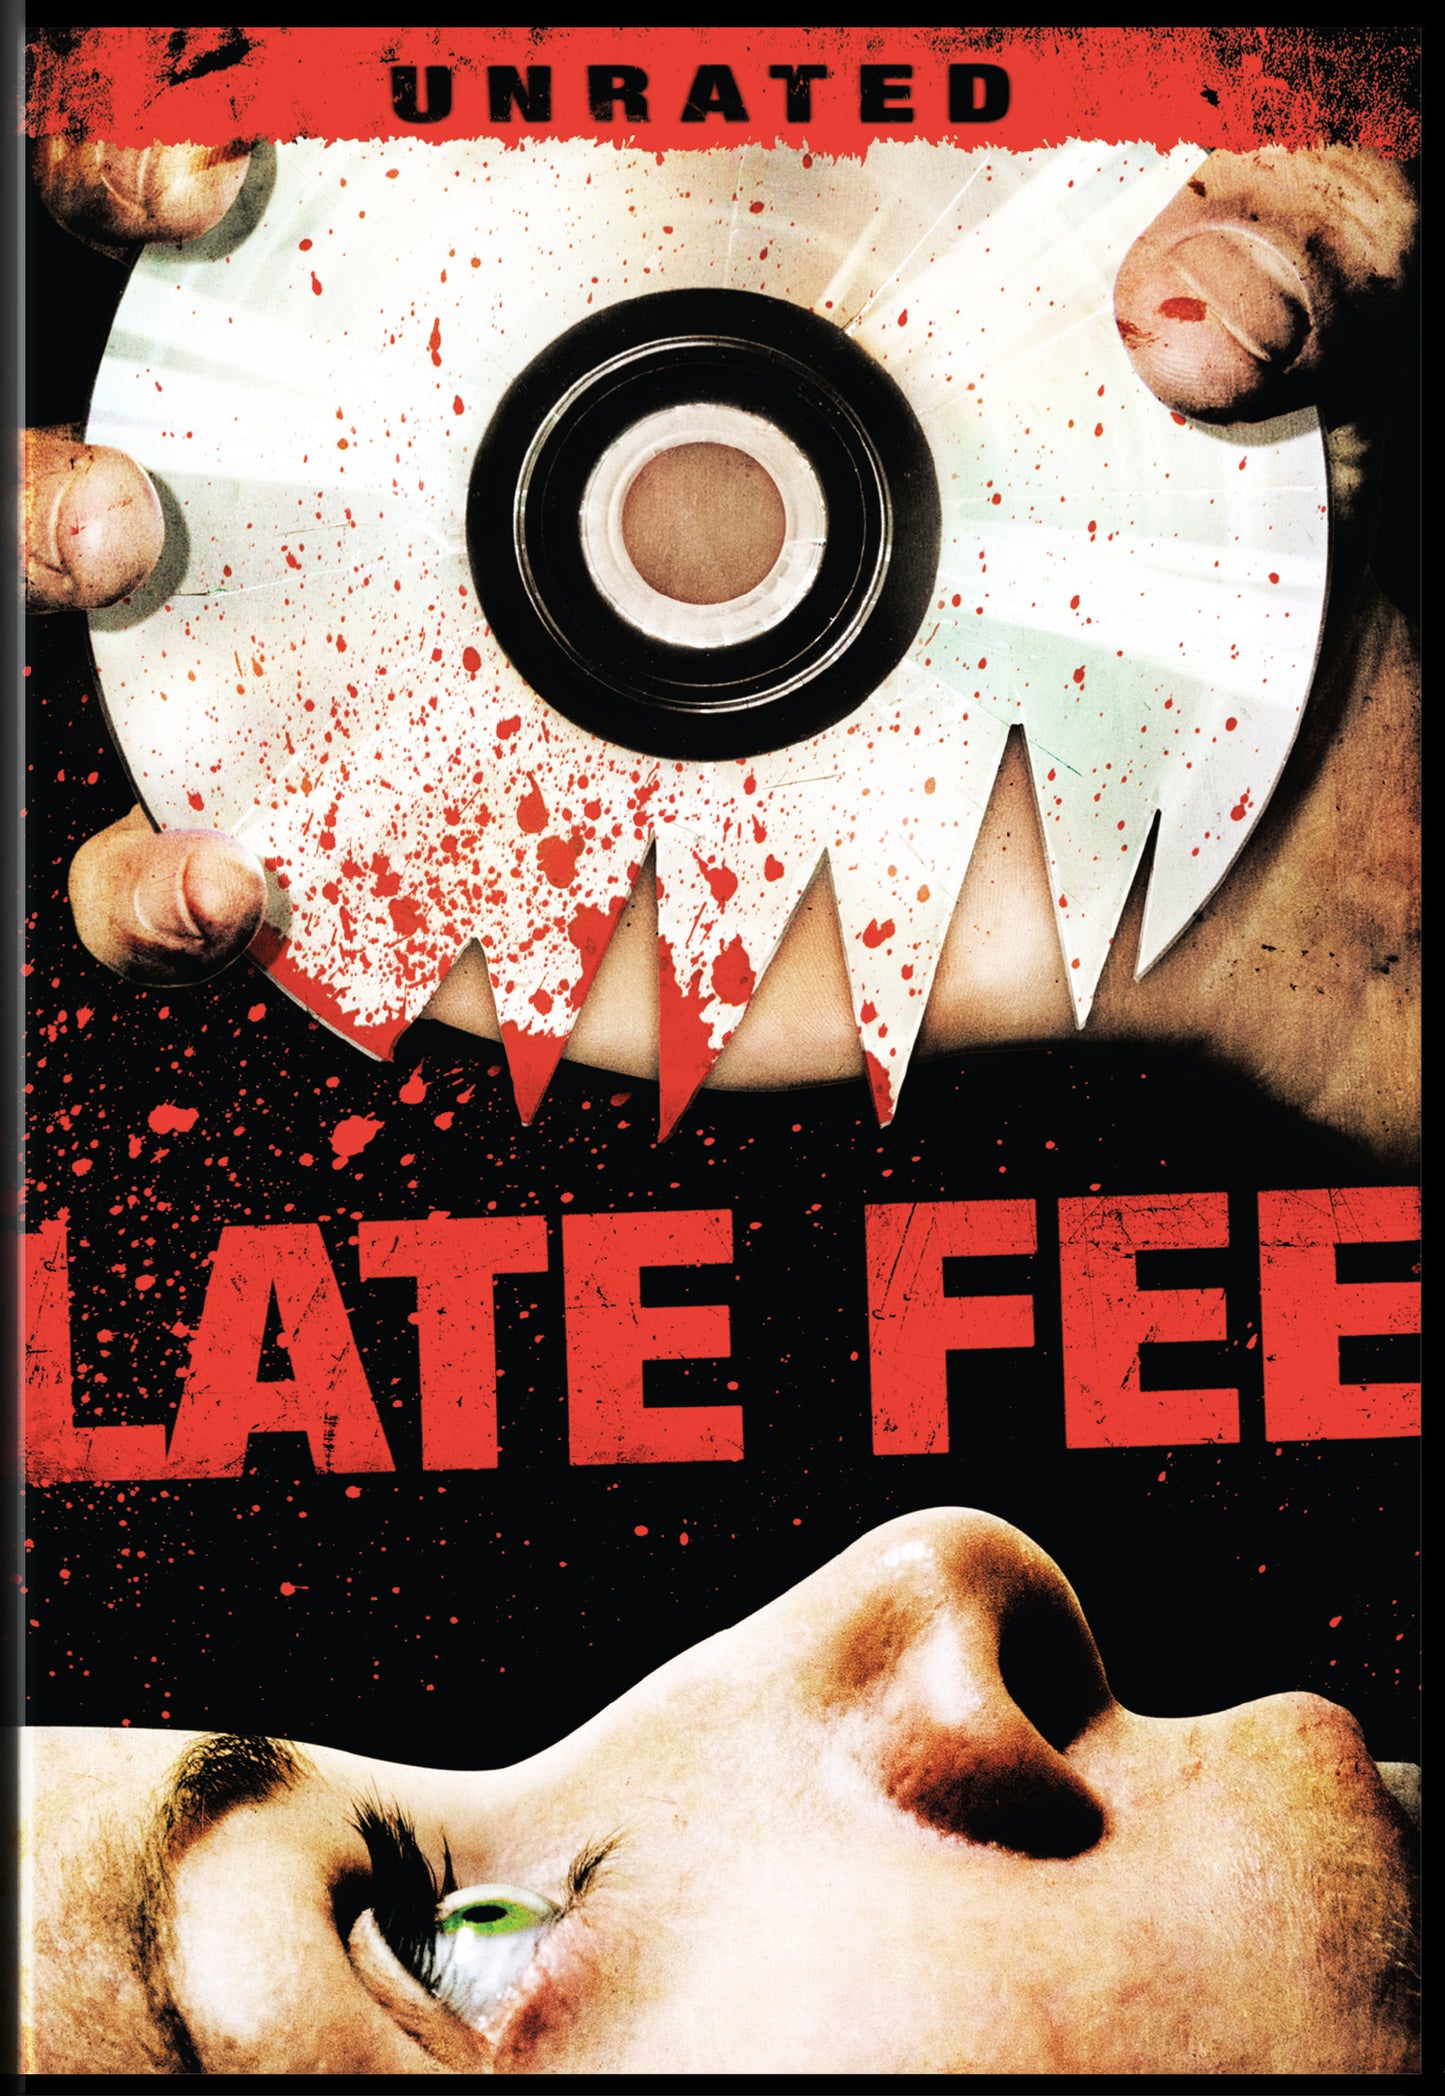 Late Fee [DVD]